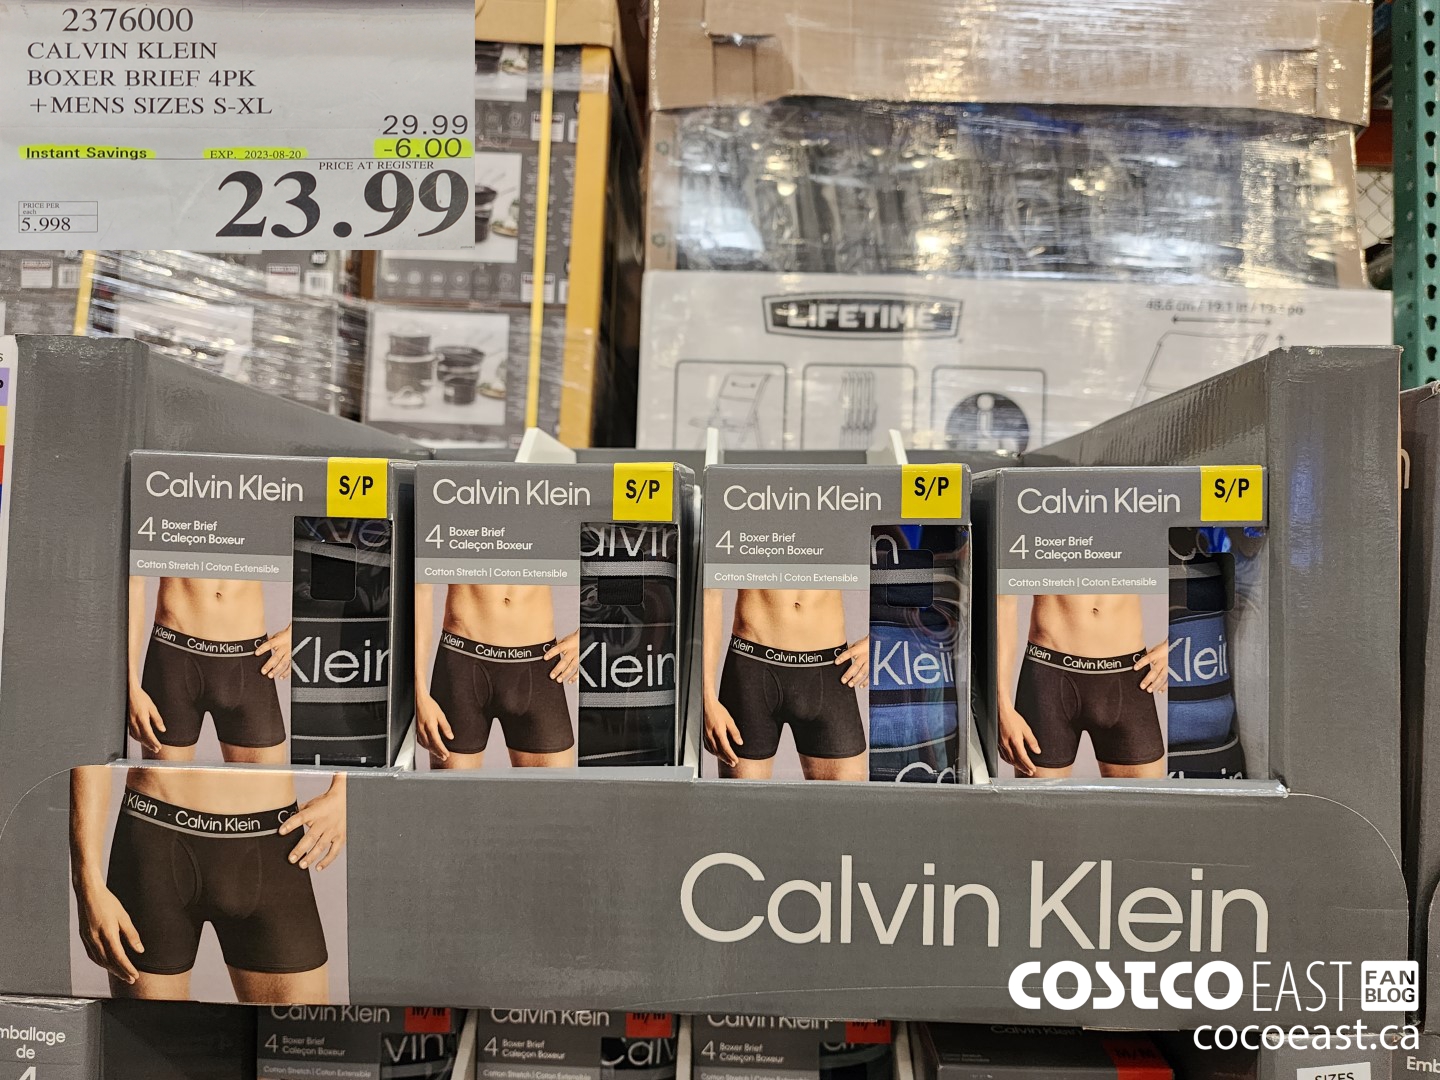 Domestic Costco open market customer purchase CK boxer underwear